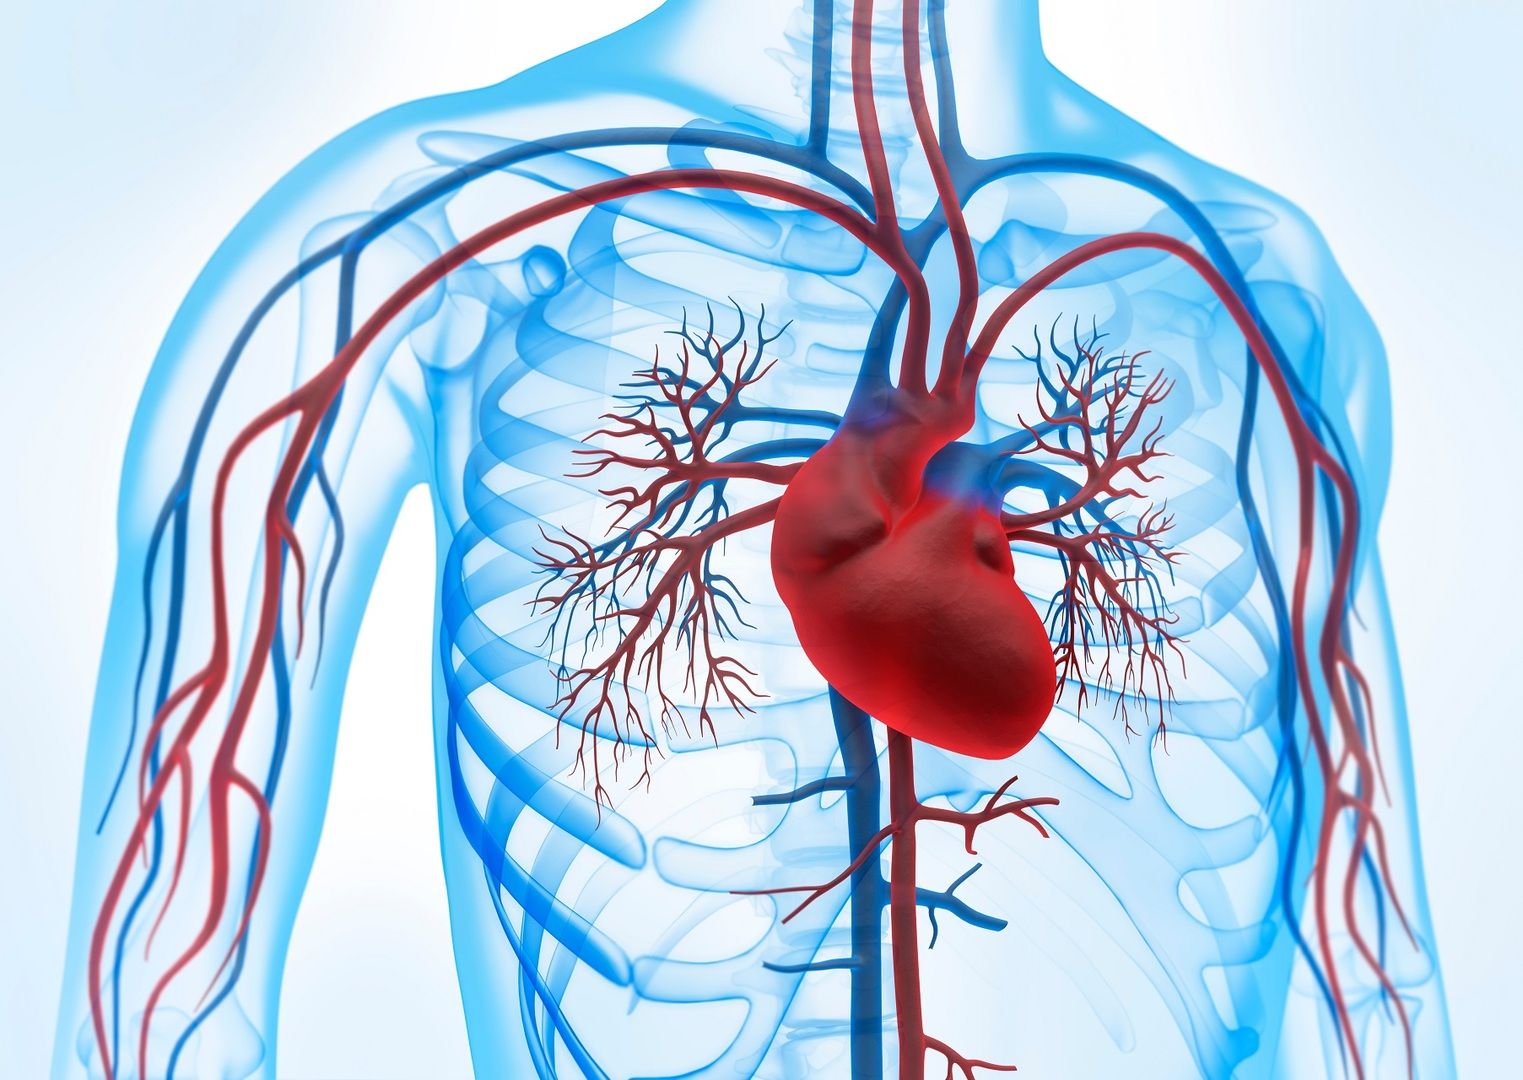 Circulación sanguínea e ilustración del corazón - Nuestro sistema cardiovascular es esencial para nuestra salud. Pero, ¿cómo podemos prevenir las enfermedades?